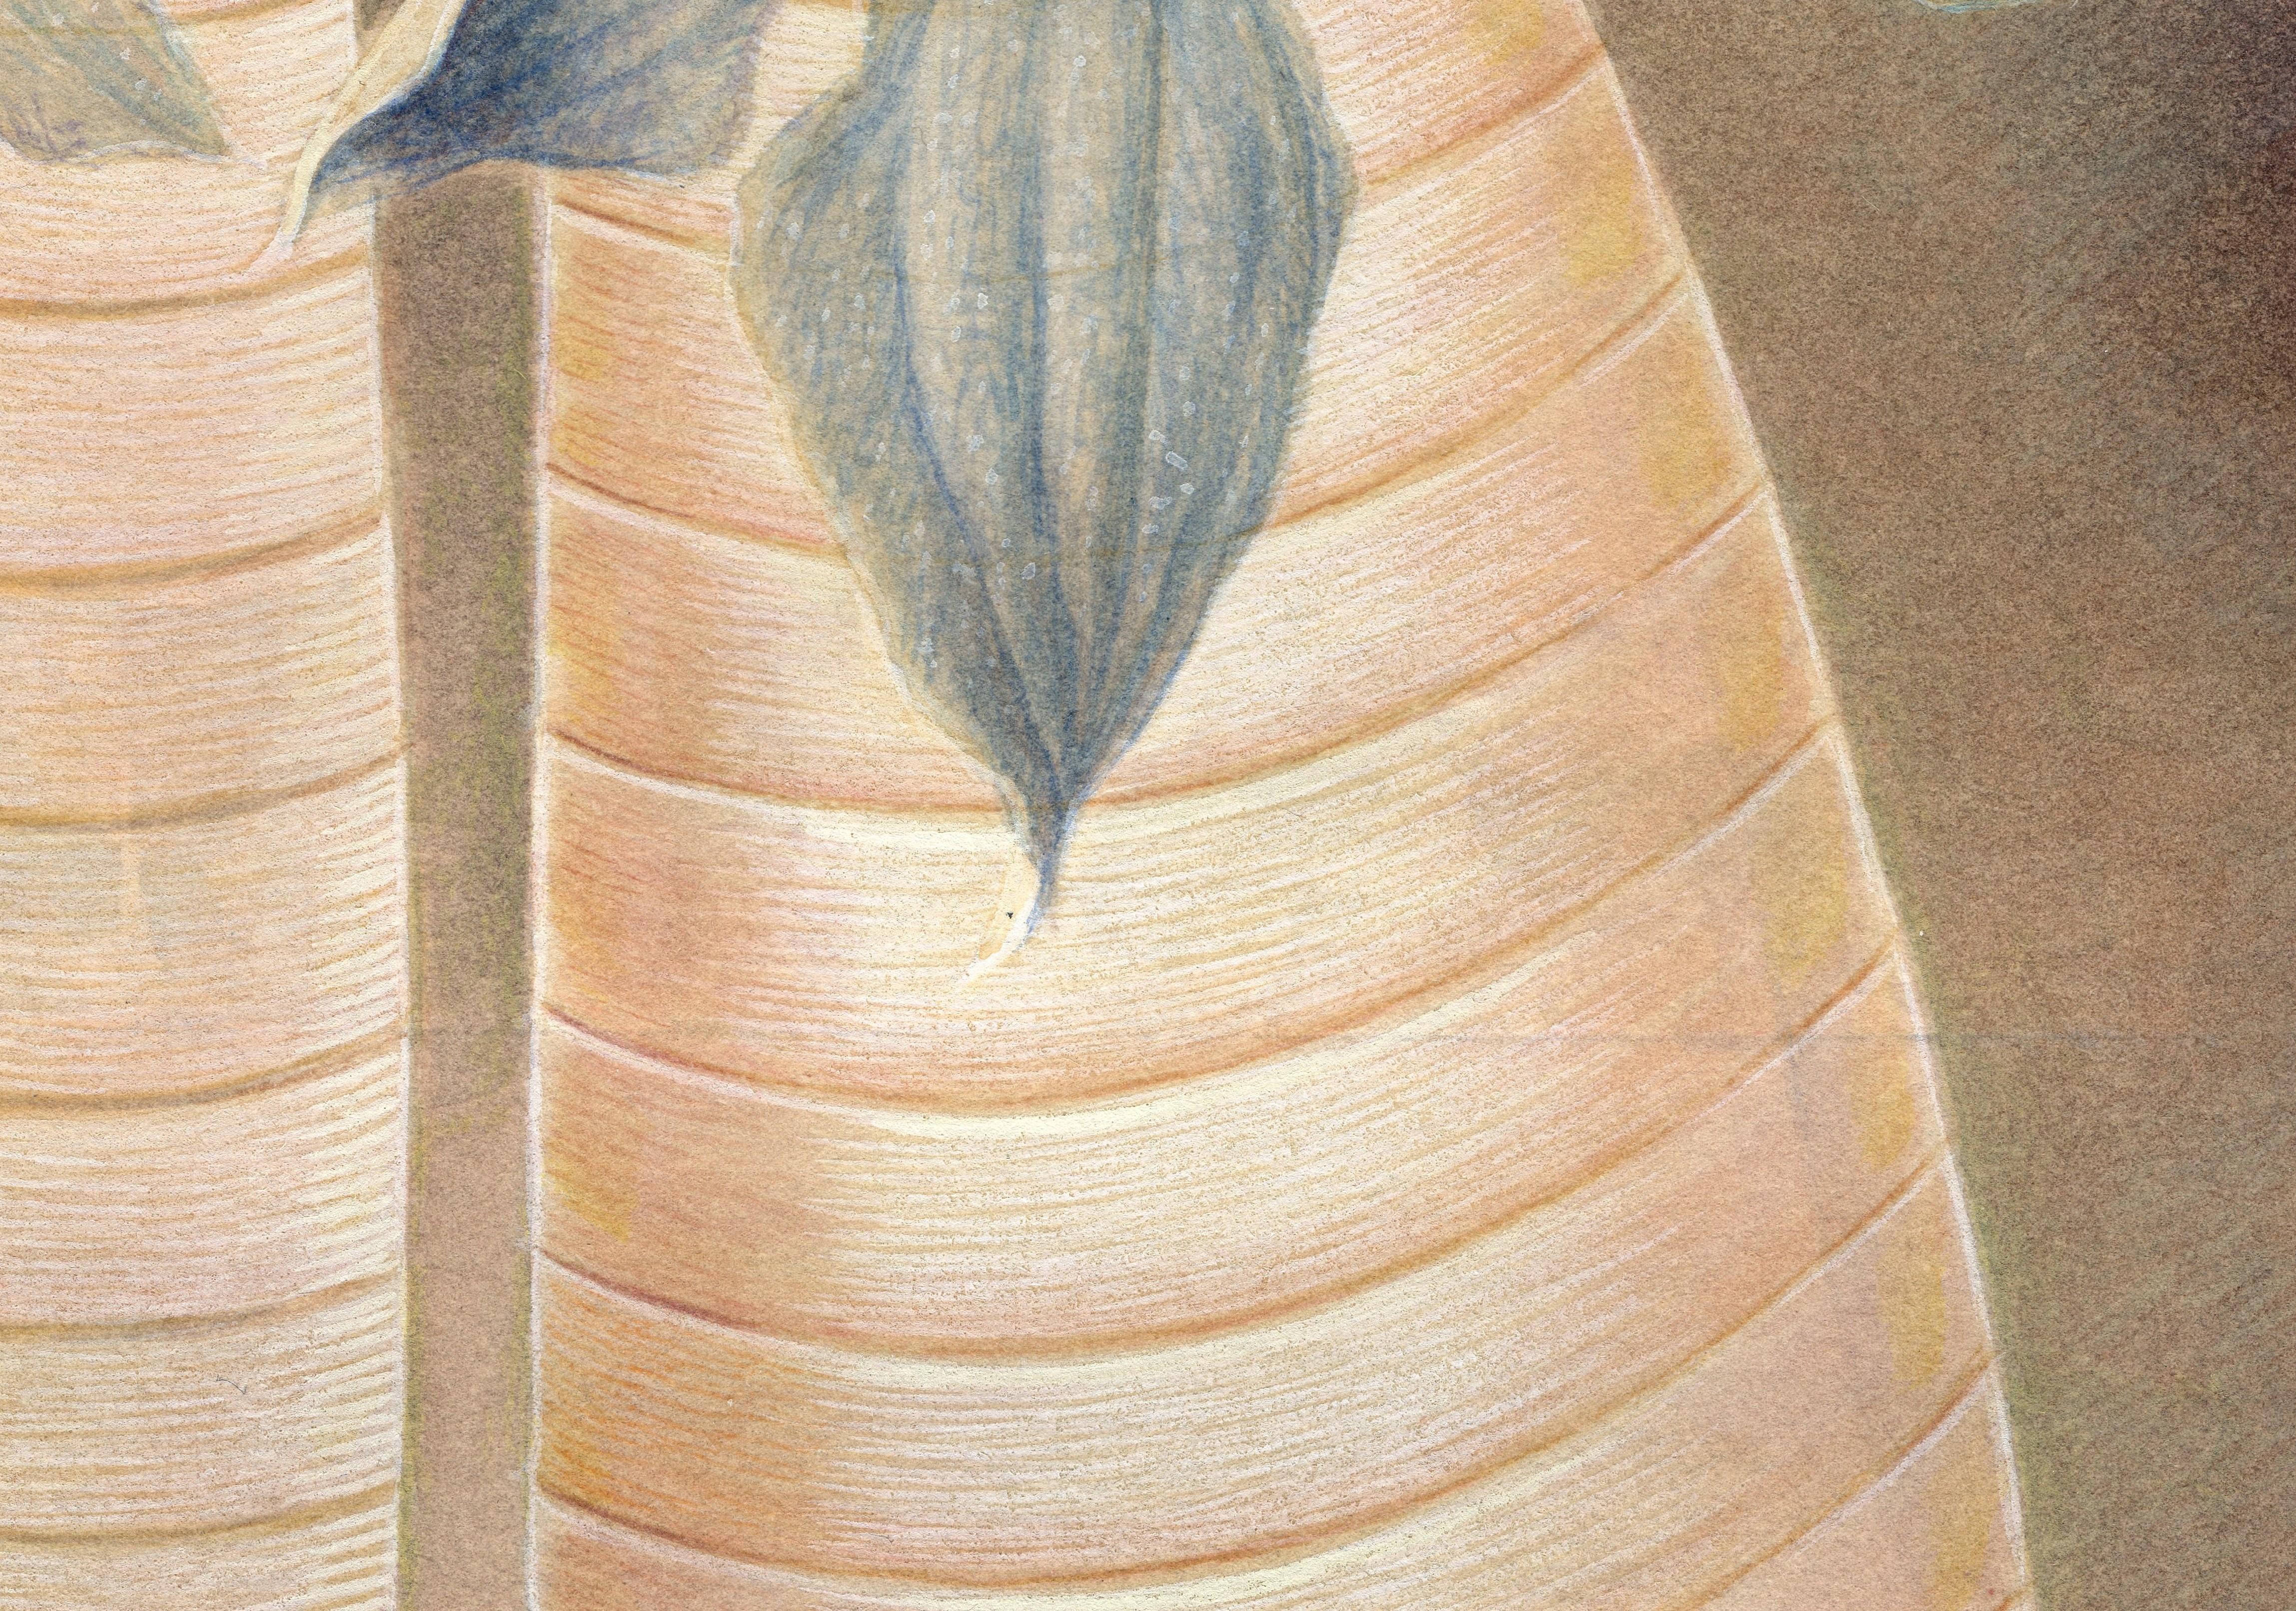  Janus, botanisches Aquarell und Gouache auf Papier, 2 Knospenvasen mit lila Blumen, Janus (Braun), Still-Life, von Christina Haglid